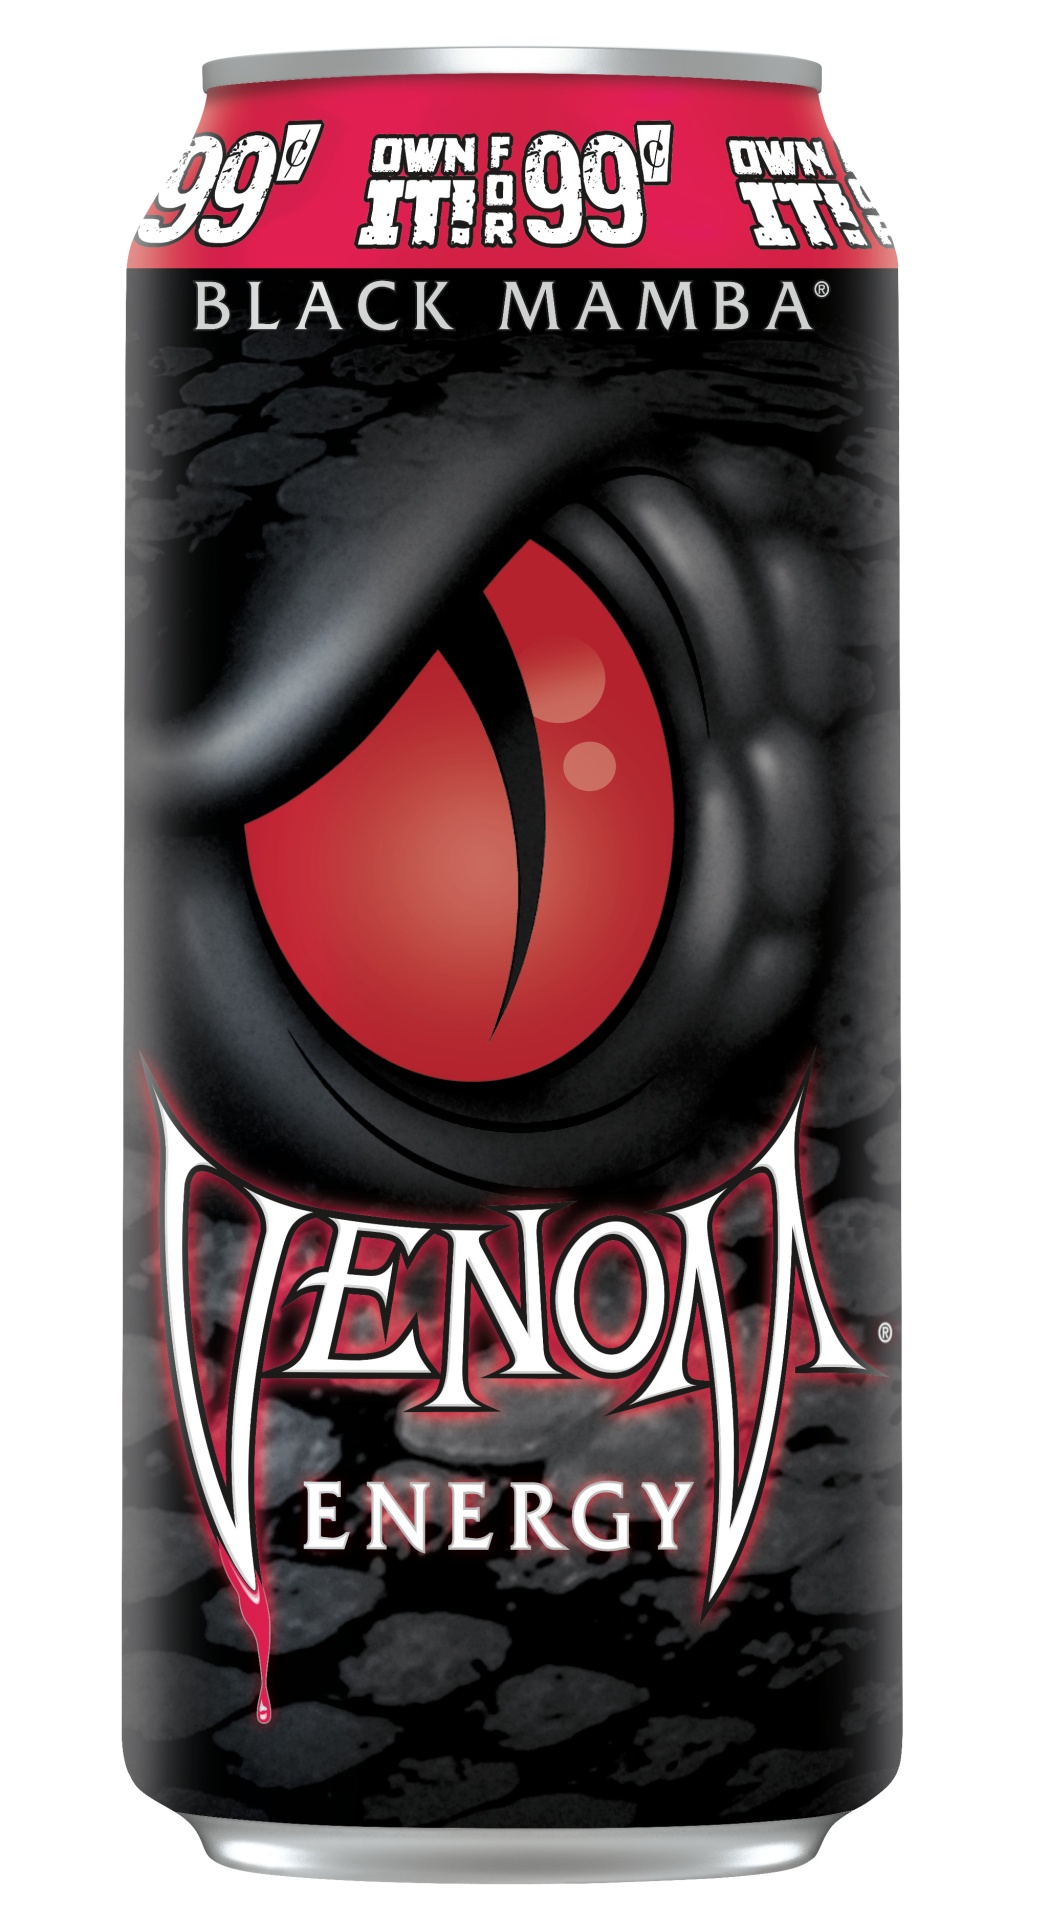 venom energy logo